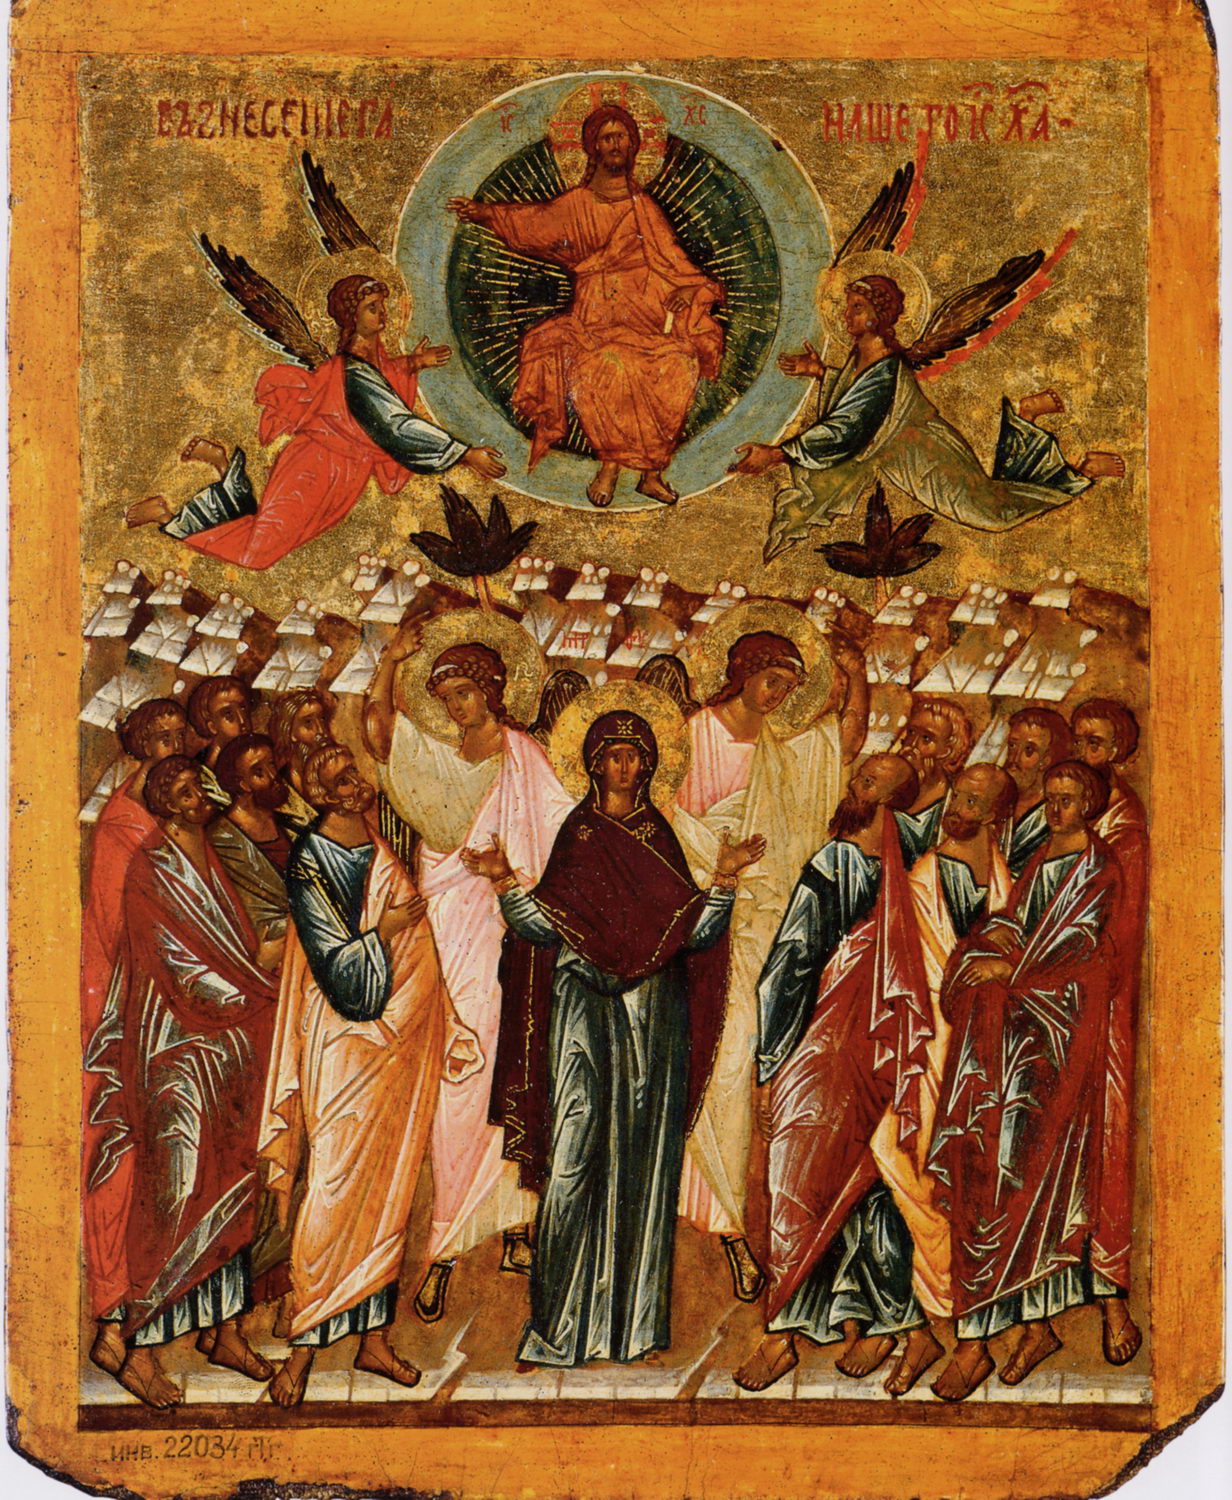 Easter 7-5 Ascension